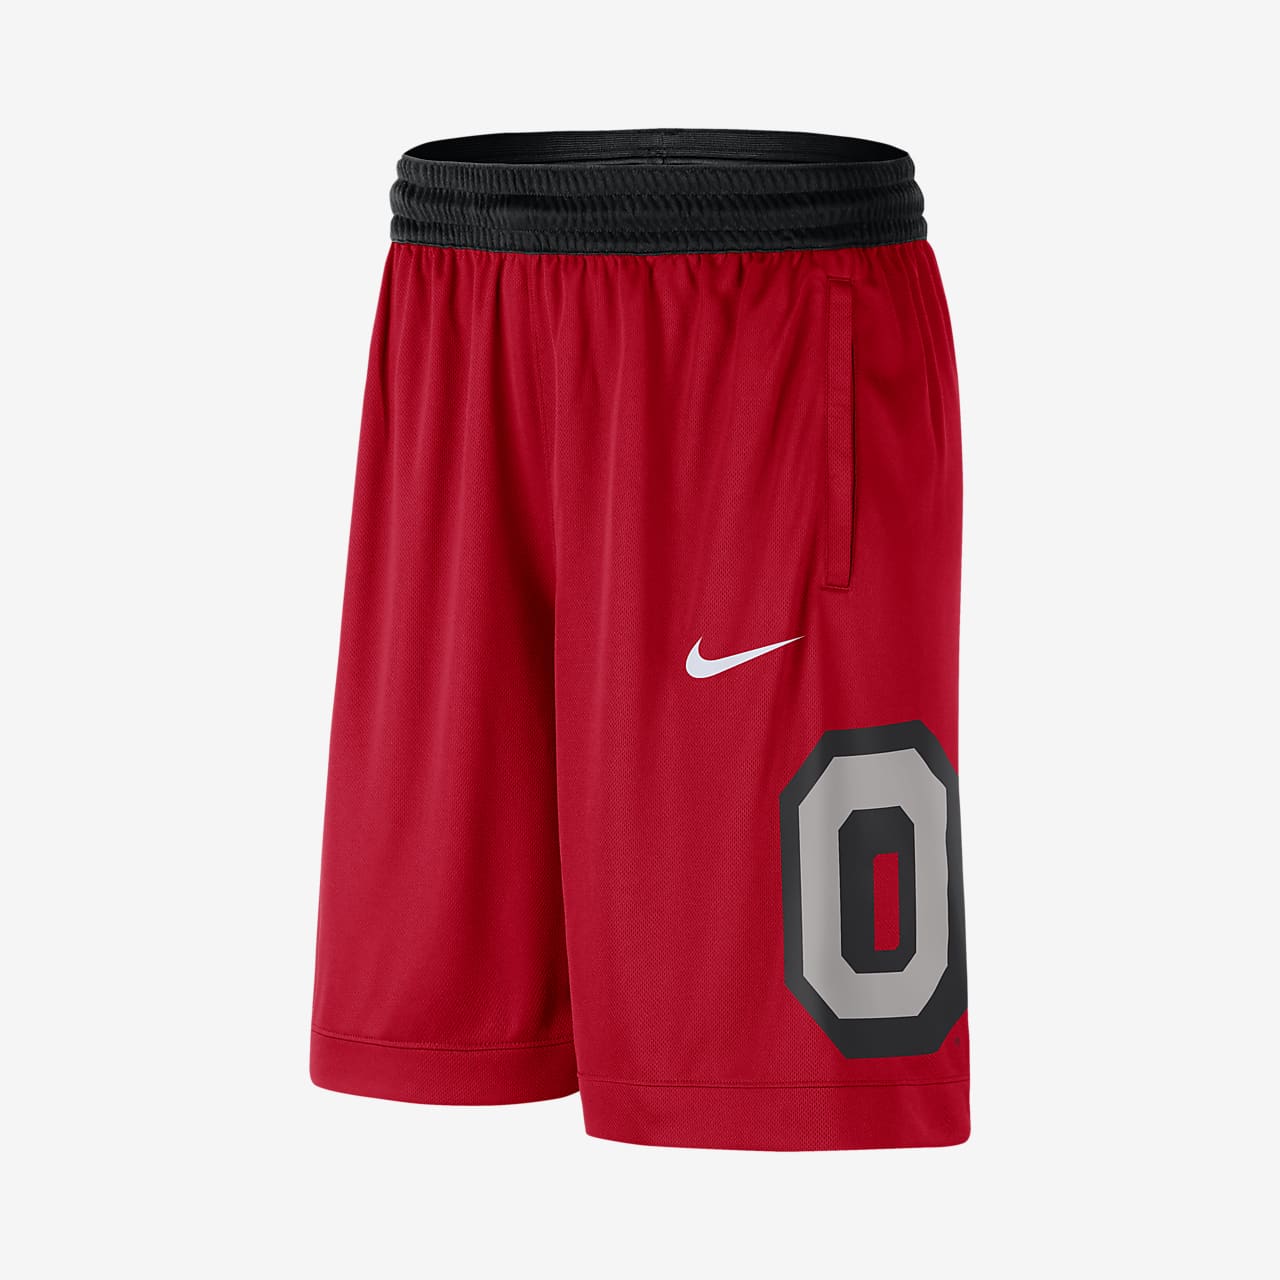 nike ohio state shorts